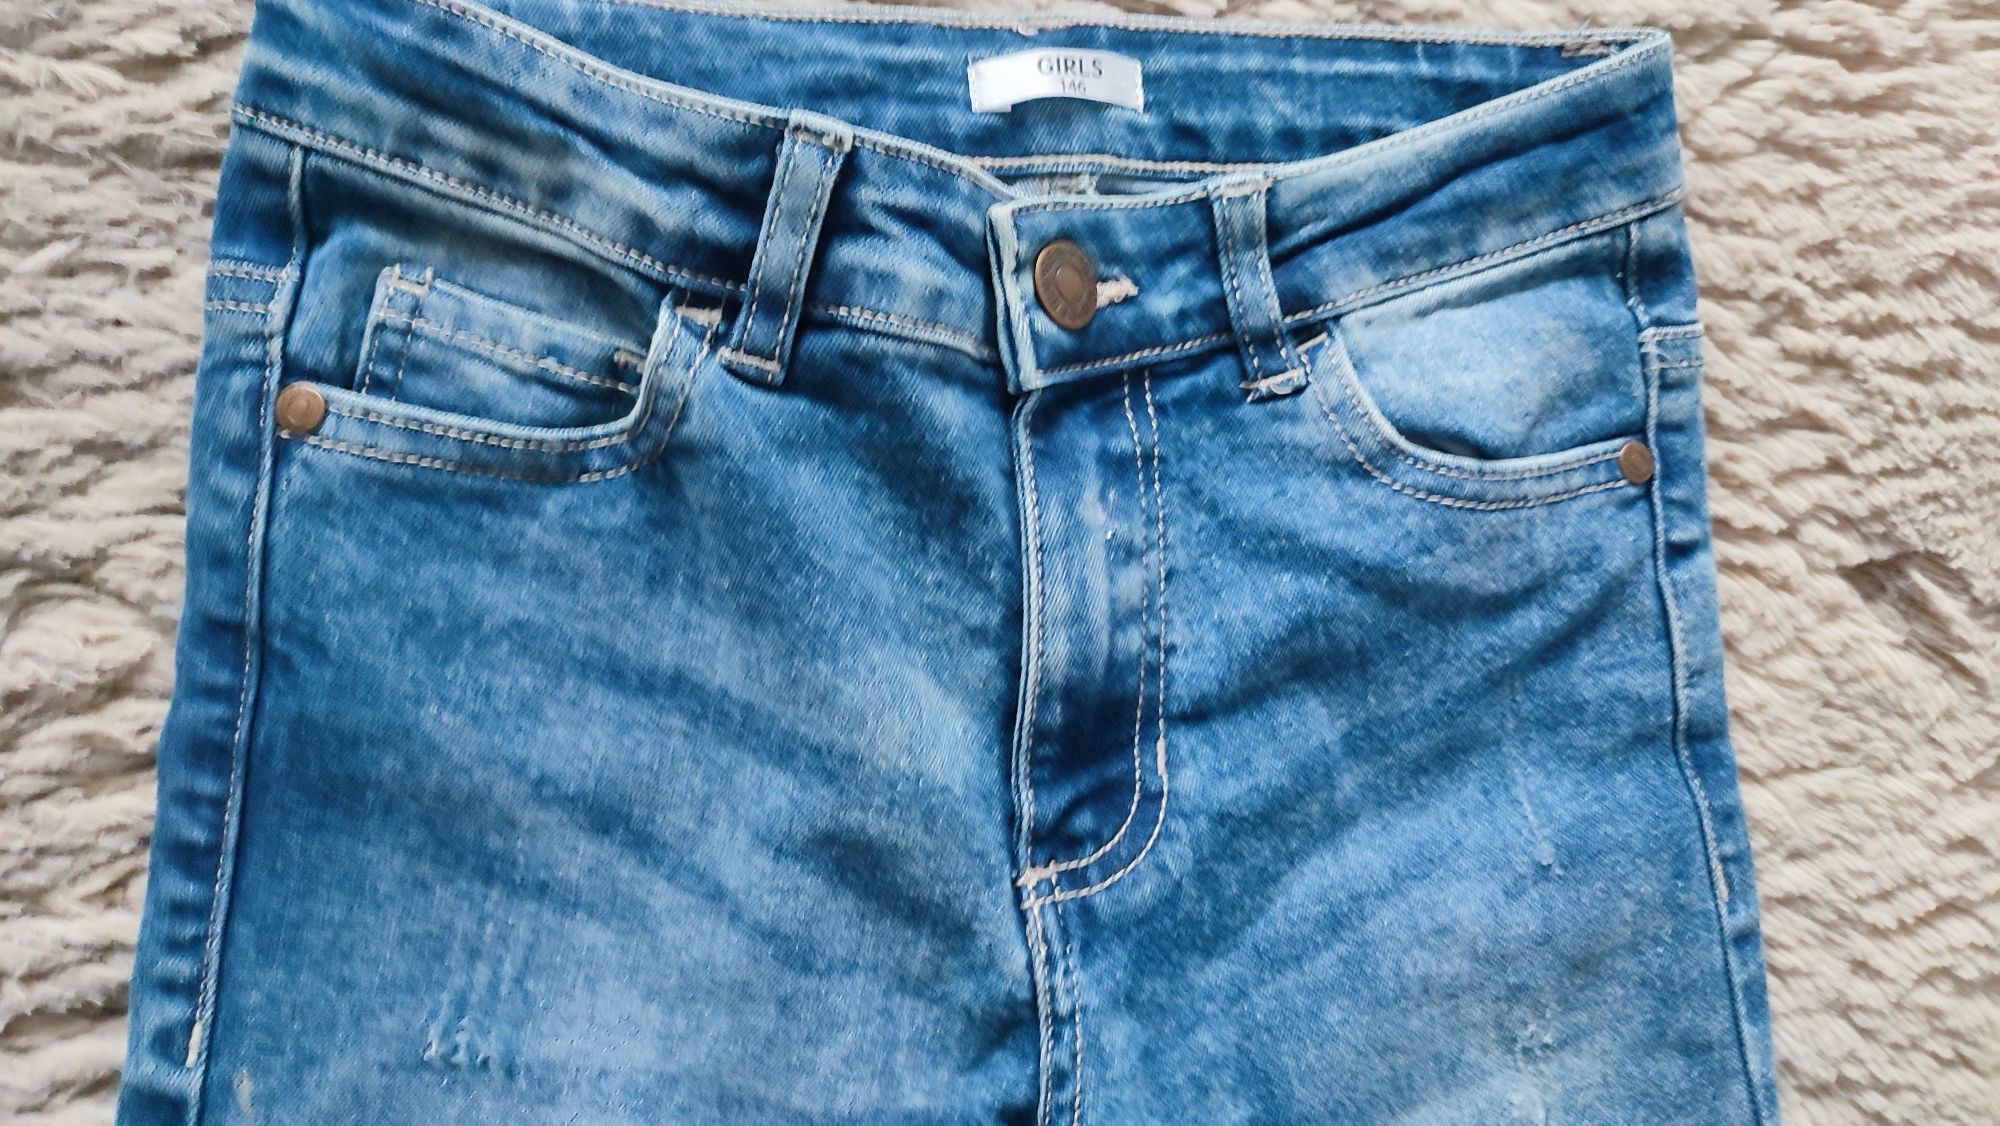 Spodnie H&M dżinsowe dla dziewczynki niebieskie,ciemny roz.146 szary